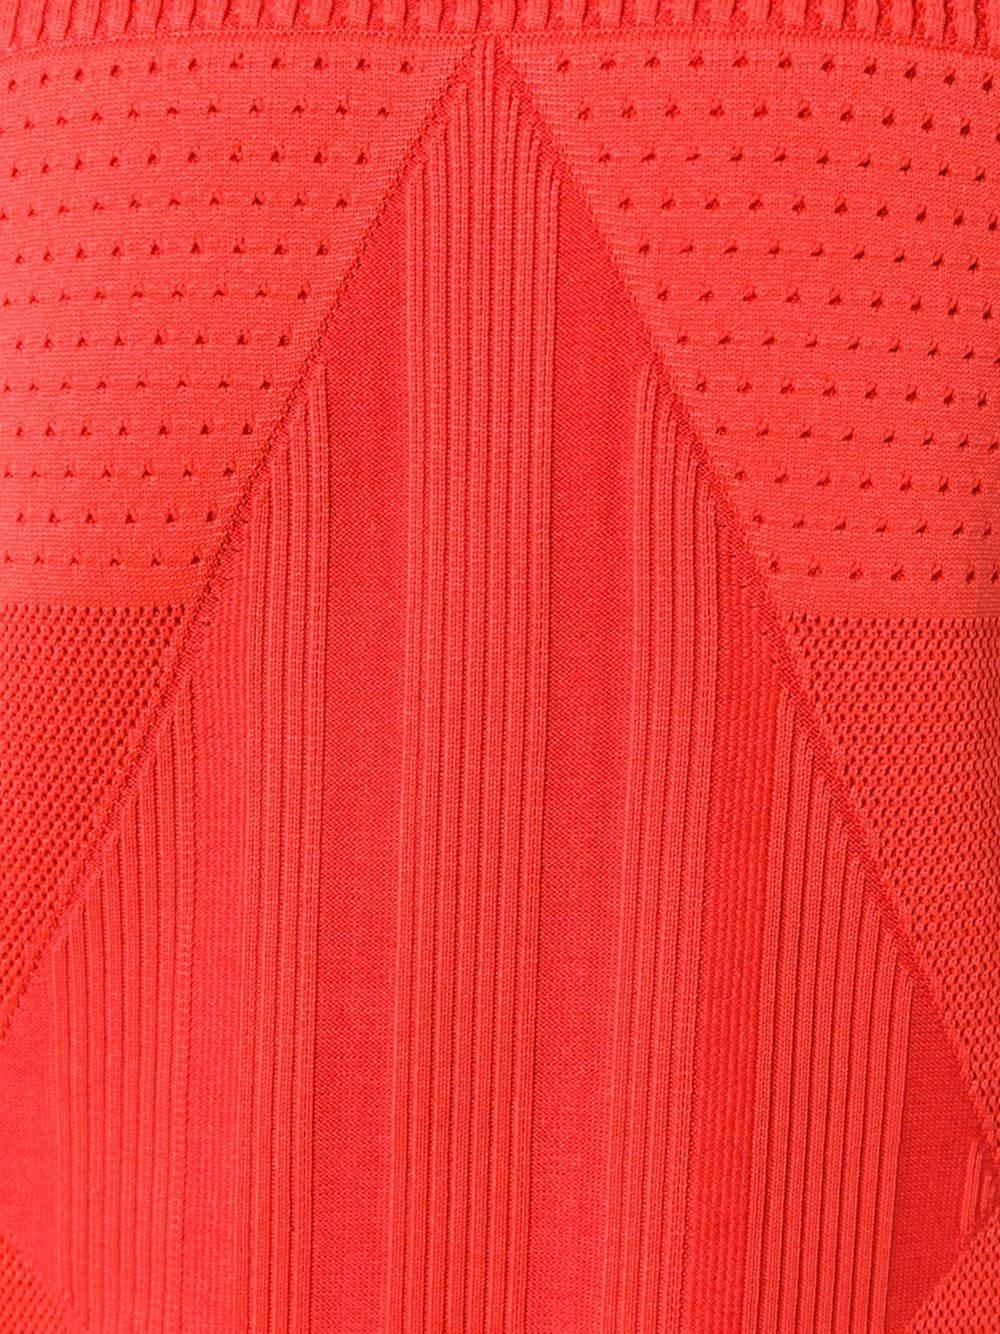 Rotes, ärmelloses Strickkleid aus Baumwollgemisch mit folgenden Eigenschaften: Rundhalsausschnitt, Stretch-Passform, kurze Länge und gerader Saum.

Farbe: Rot

Material: Baumwolle 17% / Polypropylen 83%

Maße: Hüfte: 100cm, Taille: 94cm,